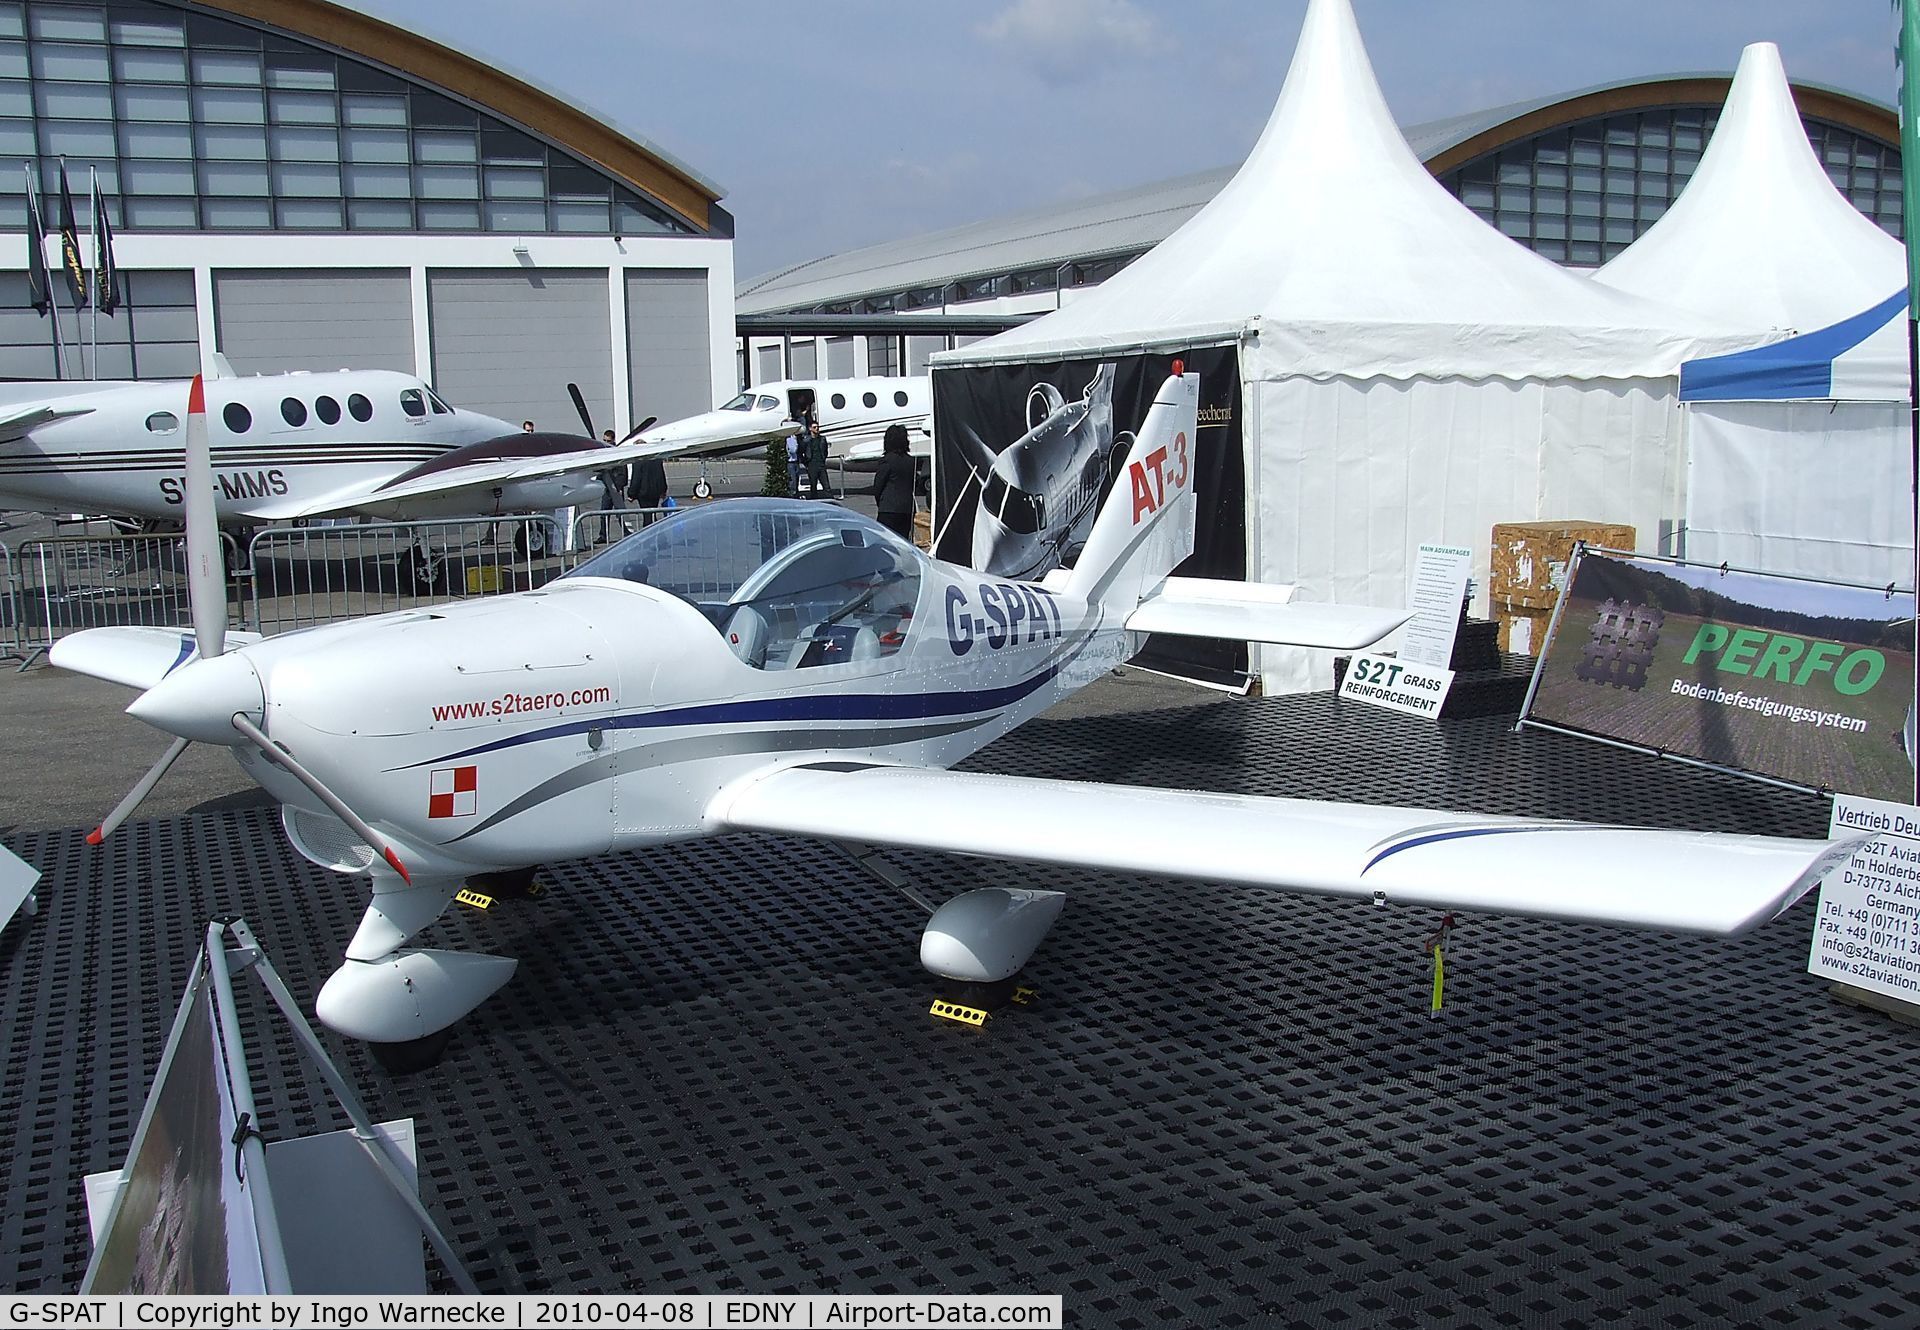 G-SPAT, 2003 Aero AT-3 R100 C/N AT3-008, Aero AT-3-R100 at the AERO 2010, Friedrichshafen